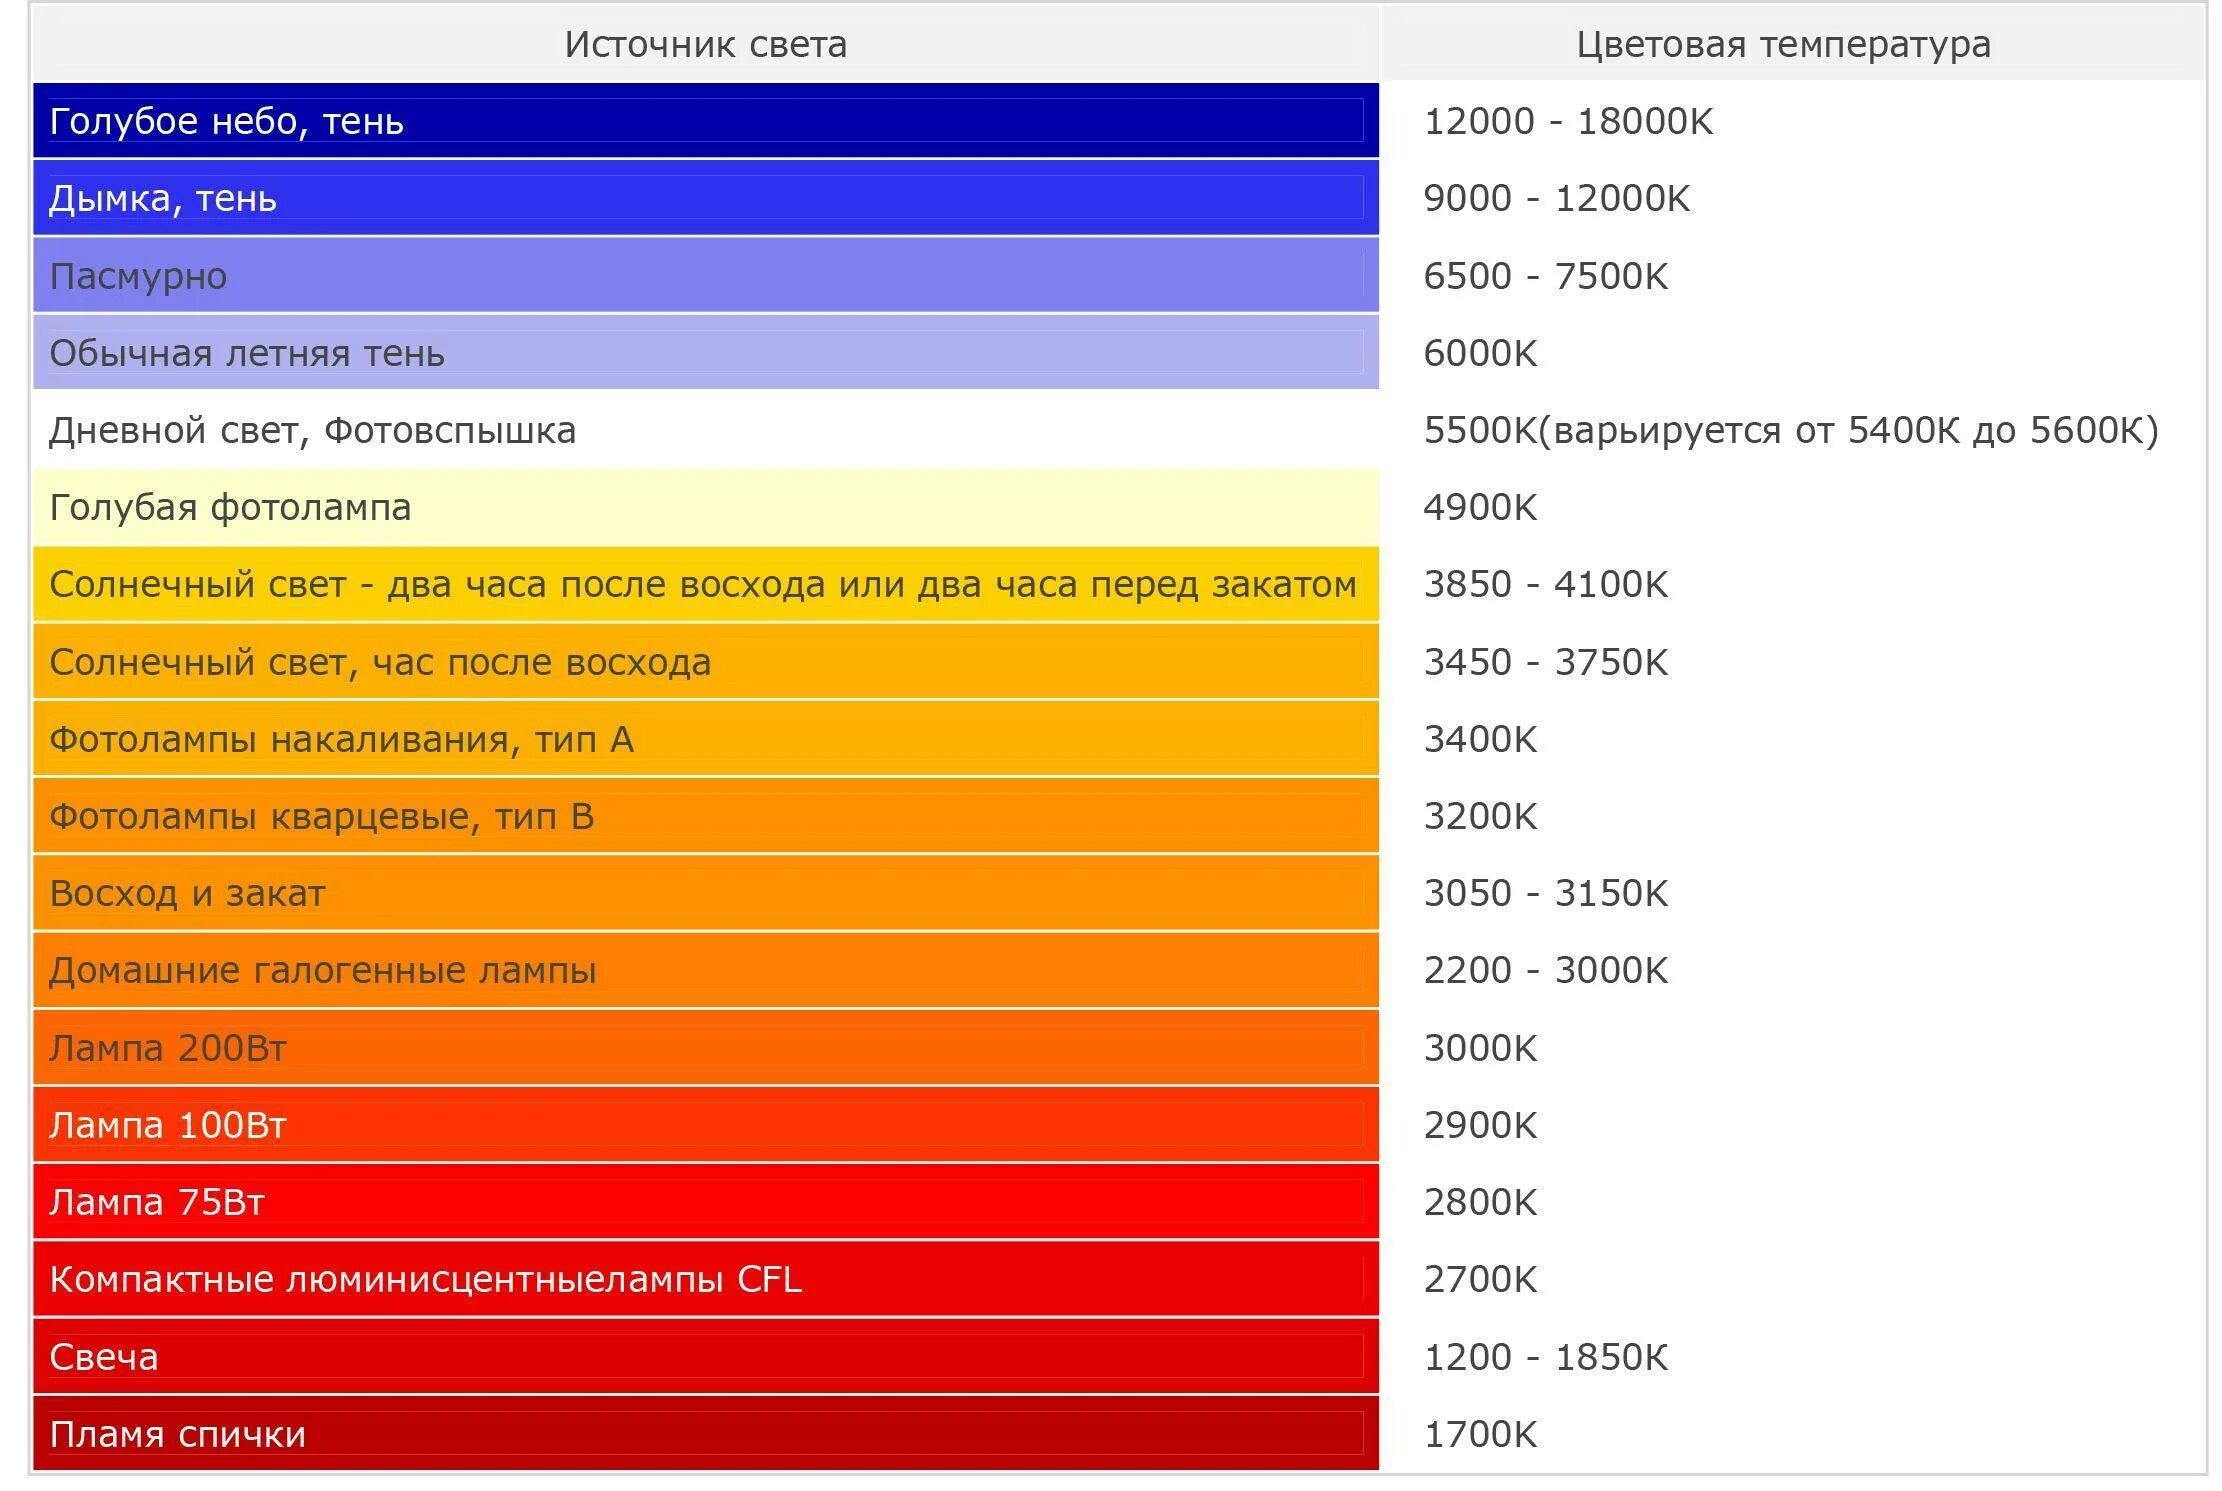 1700 5600. Цветовая температура светодиодных ламп таблица. Баланс белого таблица температур. Спектр ламп диодных 2700k. Шкала цветовых температур распространённых источников света.